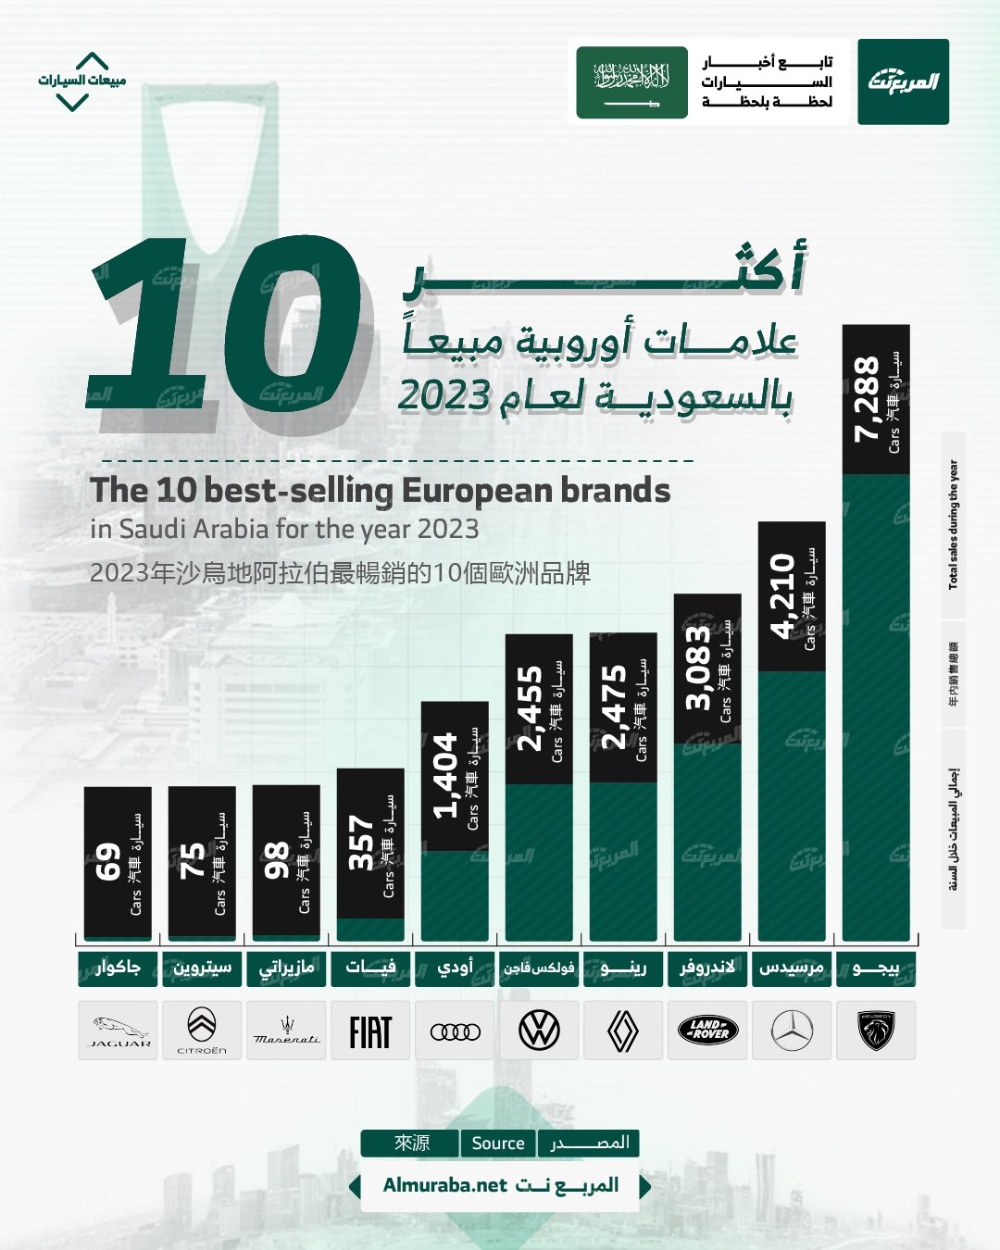 بيجو تحتل الصدارة بالأرقام وسيتروين ضمن القائمة.. أكثر 10 علامات أوروبية مبيعاً في السعودية 2023 1